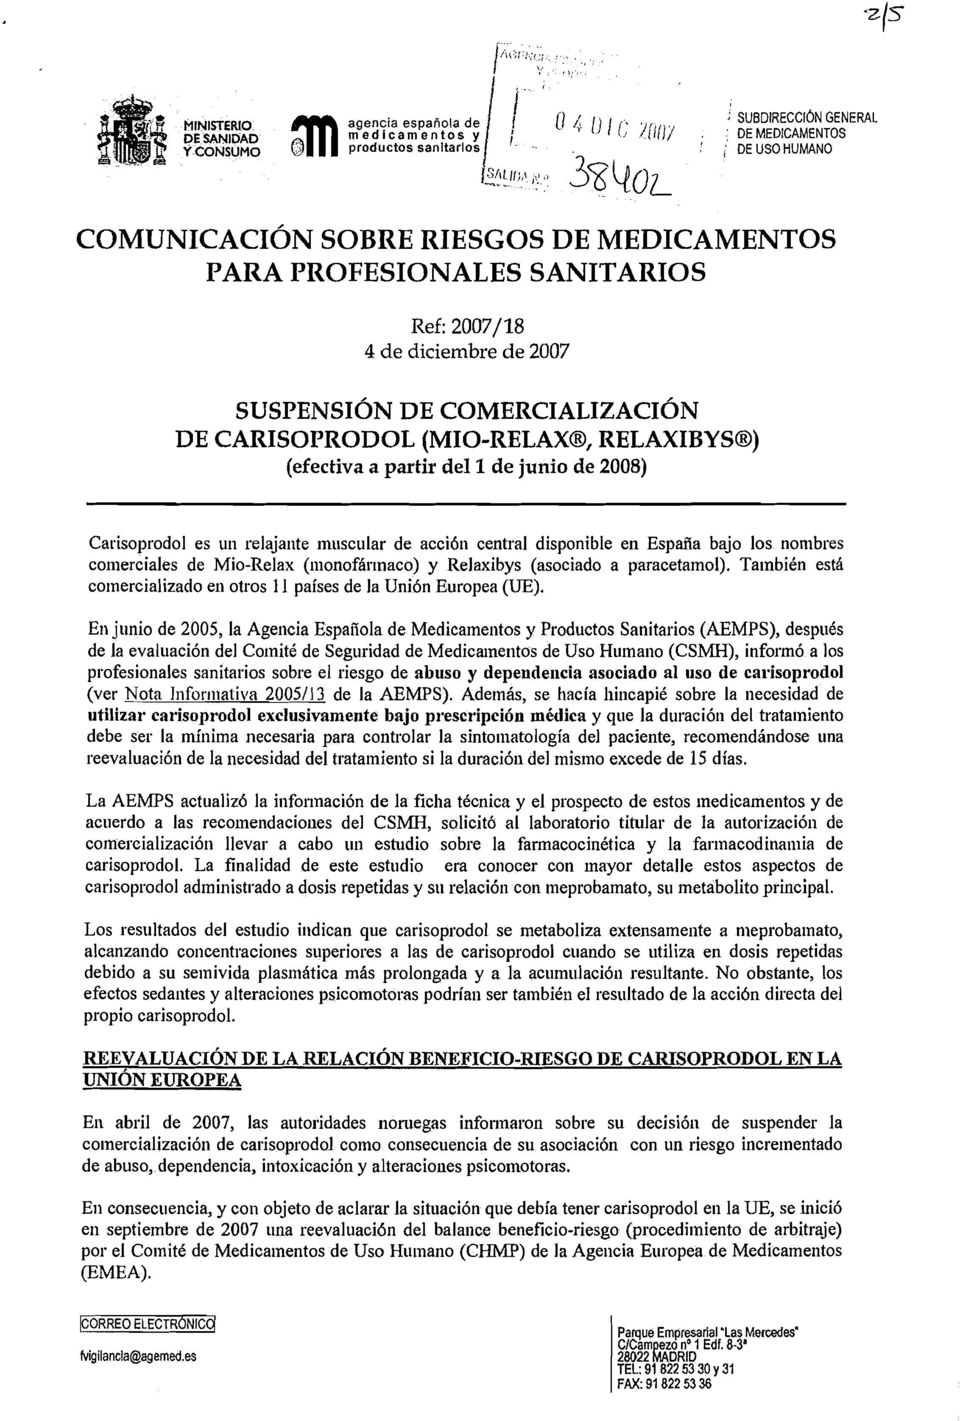 COMUNICACIÓN SOBRE RIESGOS DE MEDICAMENTOS PARA PROFESIONALES SANITARIOS Ref: 2007/18 4 de diciembre de 2007 SUSPENSIÓN DE COMERCIALIZACIÓN DE CARISOPRODOL (MIO-RELAXB, RELAXIBYSB) (efectiva a partir